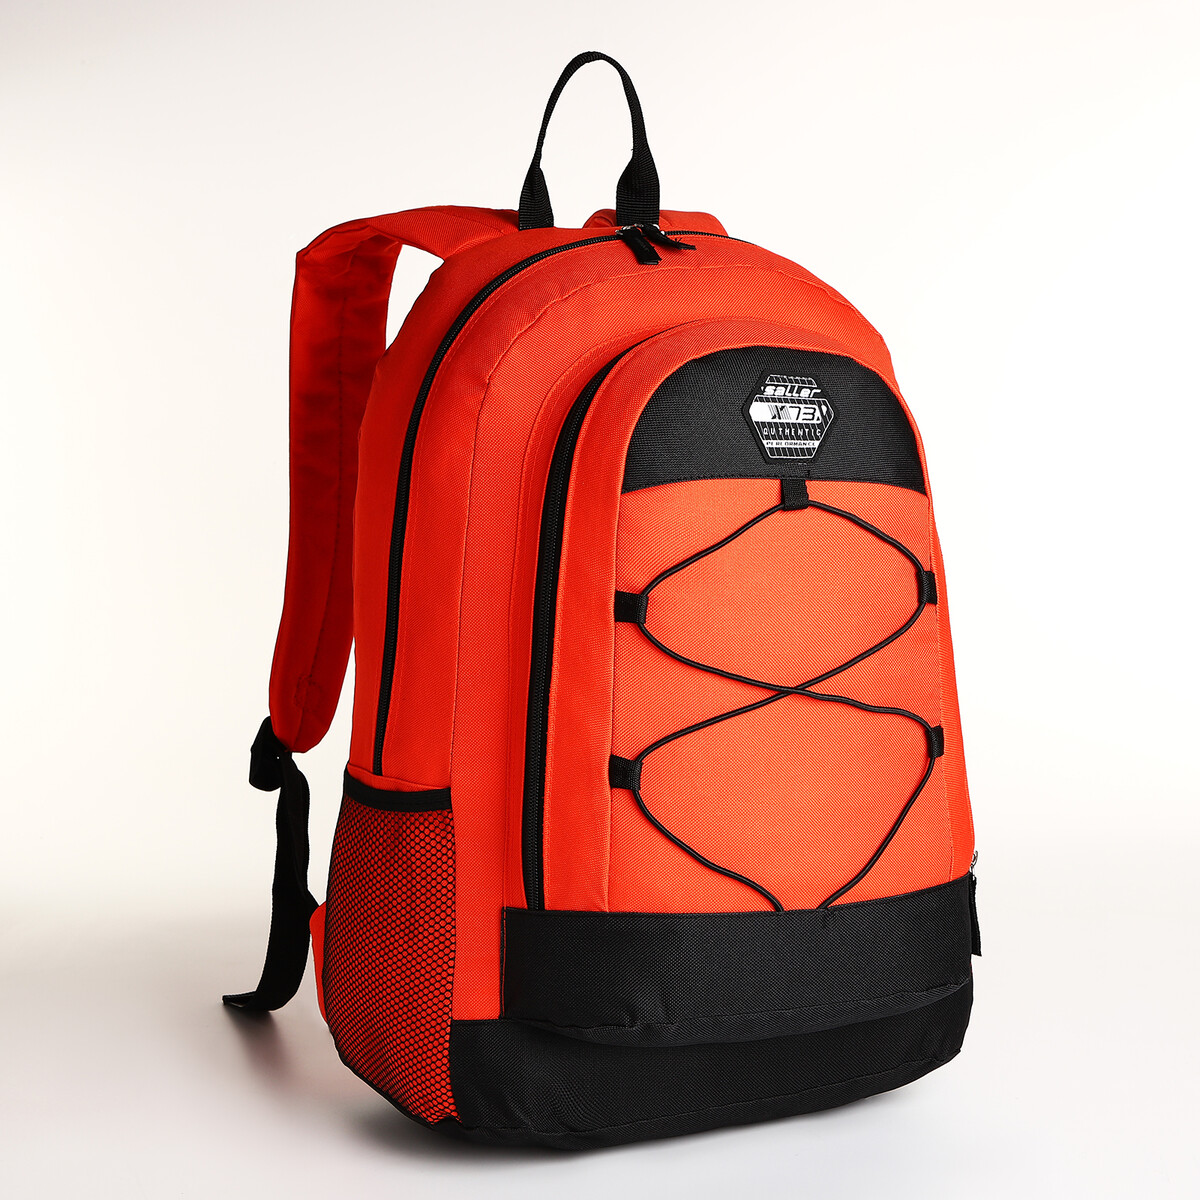 Рюкзак молодежный на молнии, 3 кармана, цвет оранжевый рюкзак молодежный grizzly анатомический оранжевый rb 456 4 1